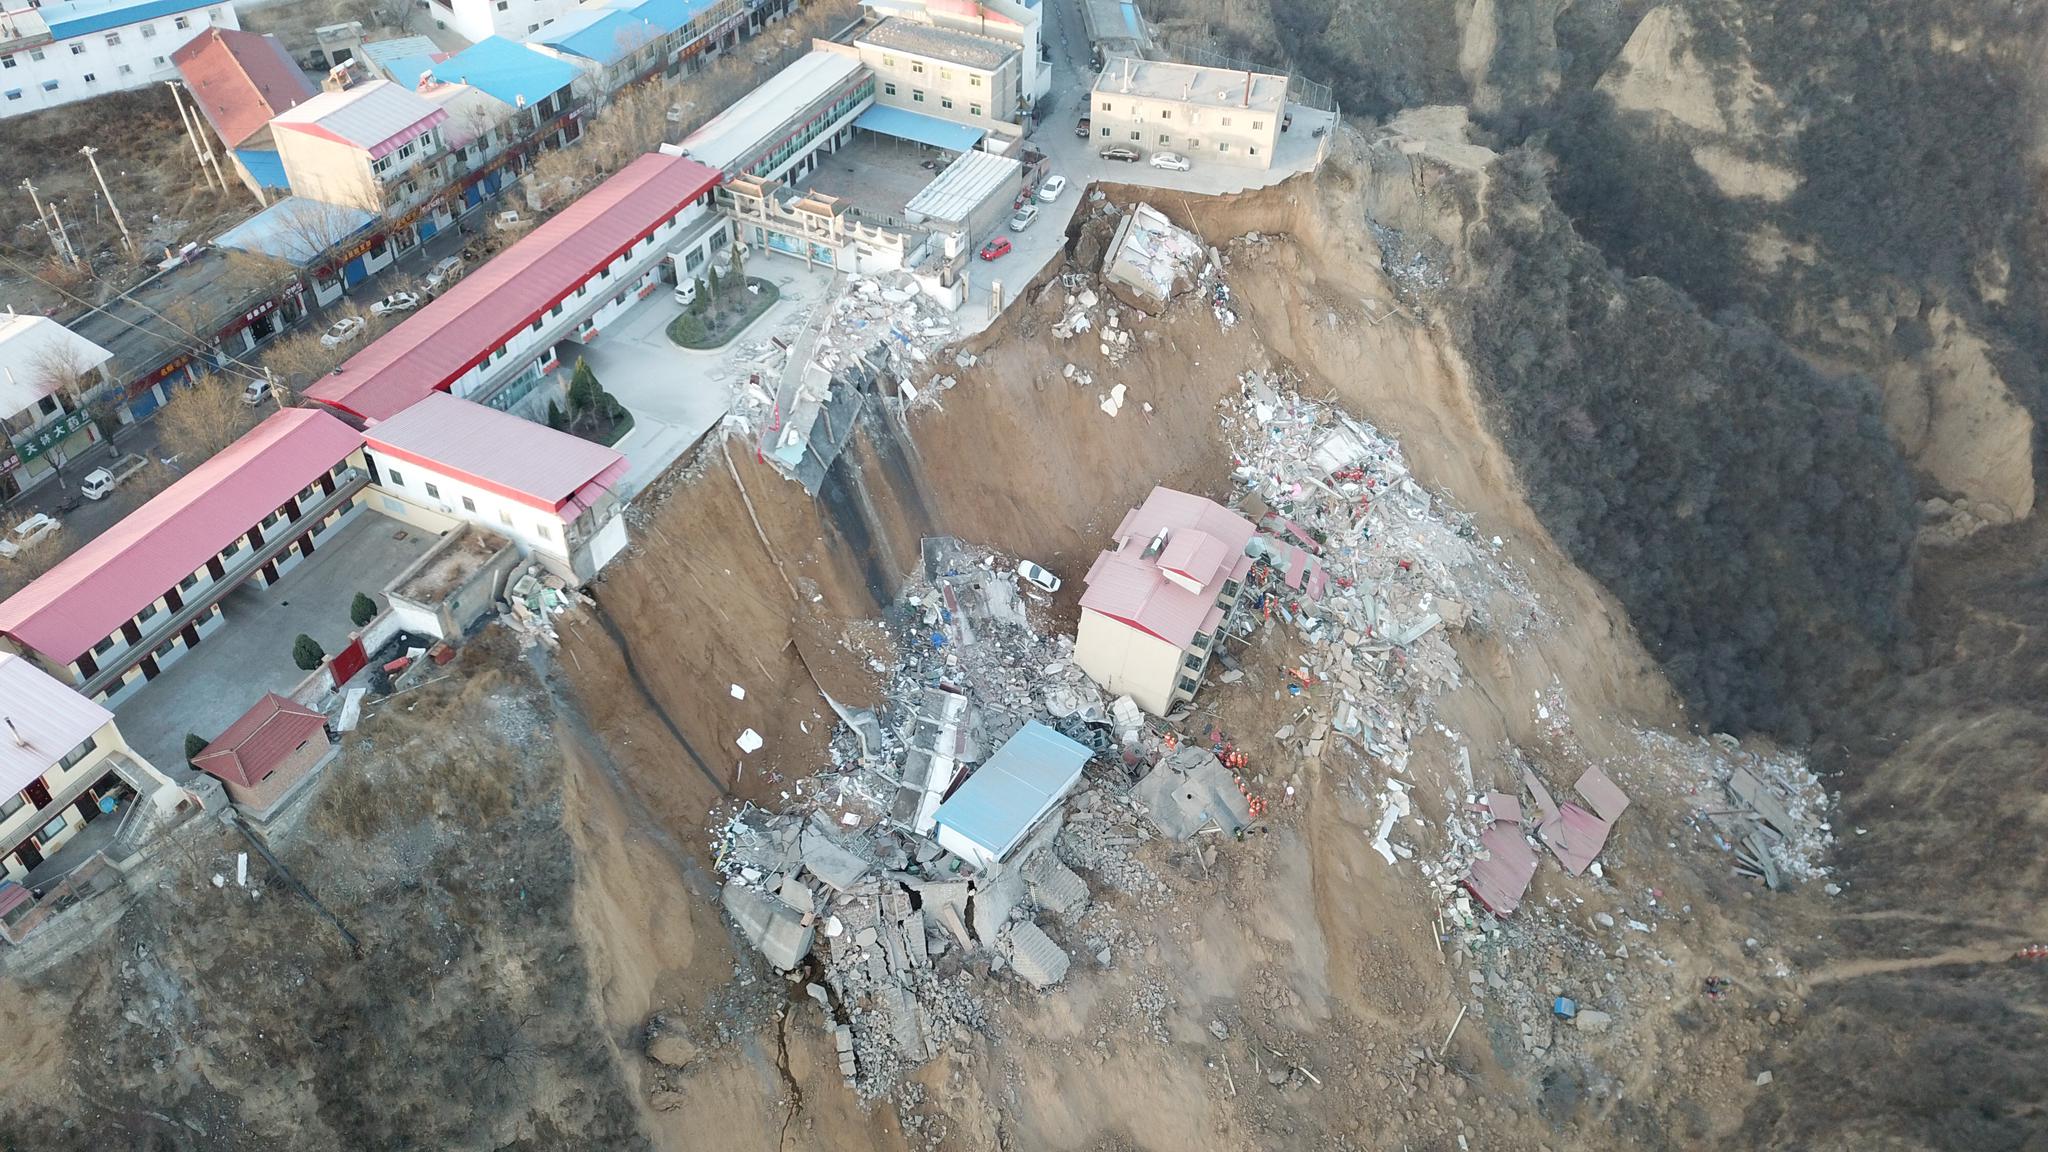 疑因屋頂加蓋導致悲劇 山西襄汾餐館坍塌造成29人死亡 -- 上報 / 國際